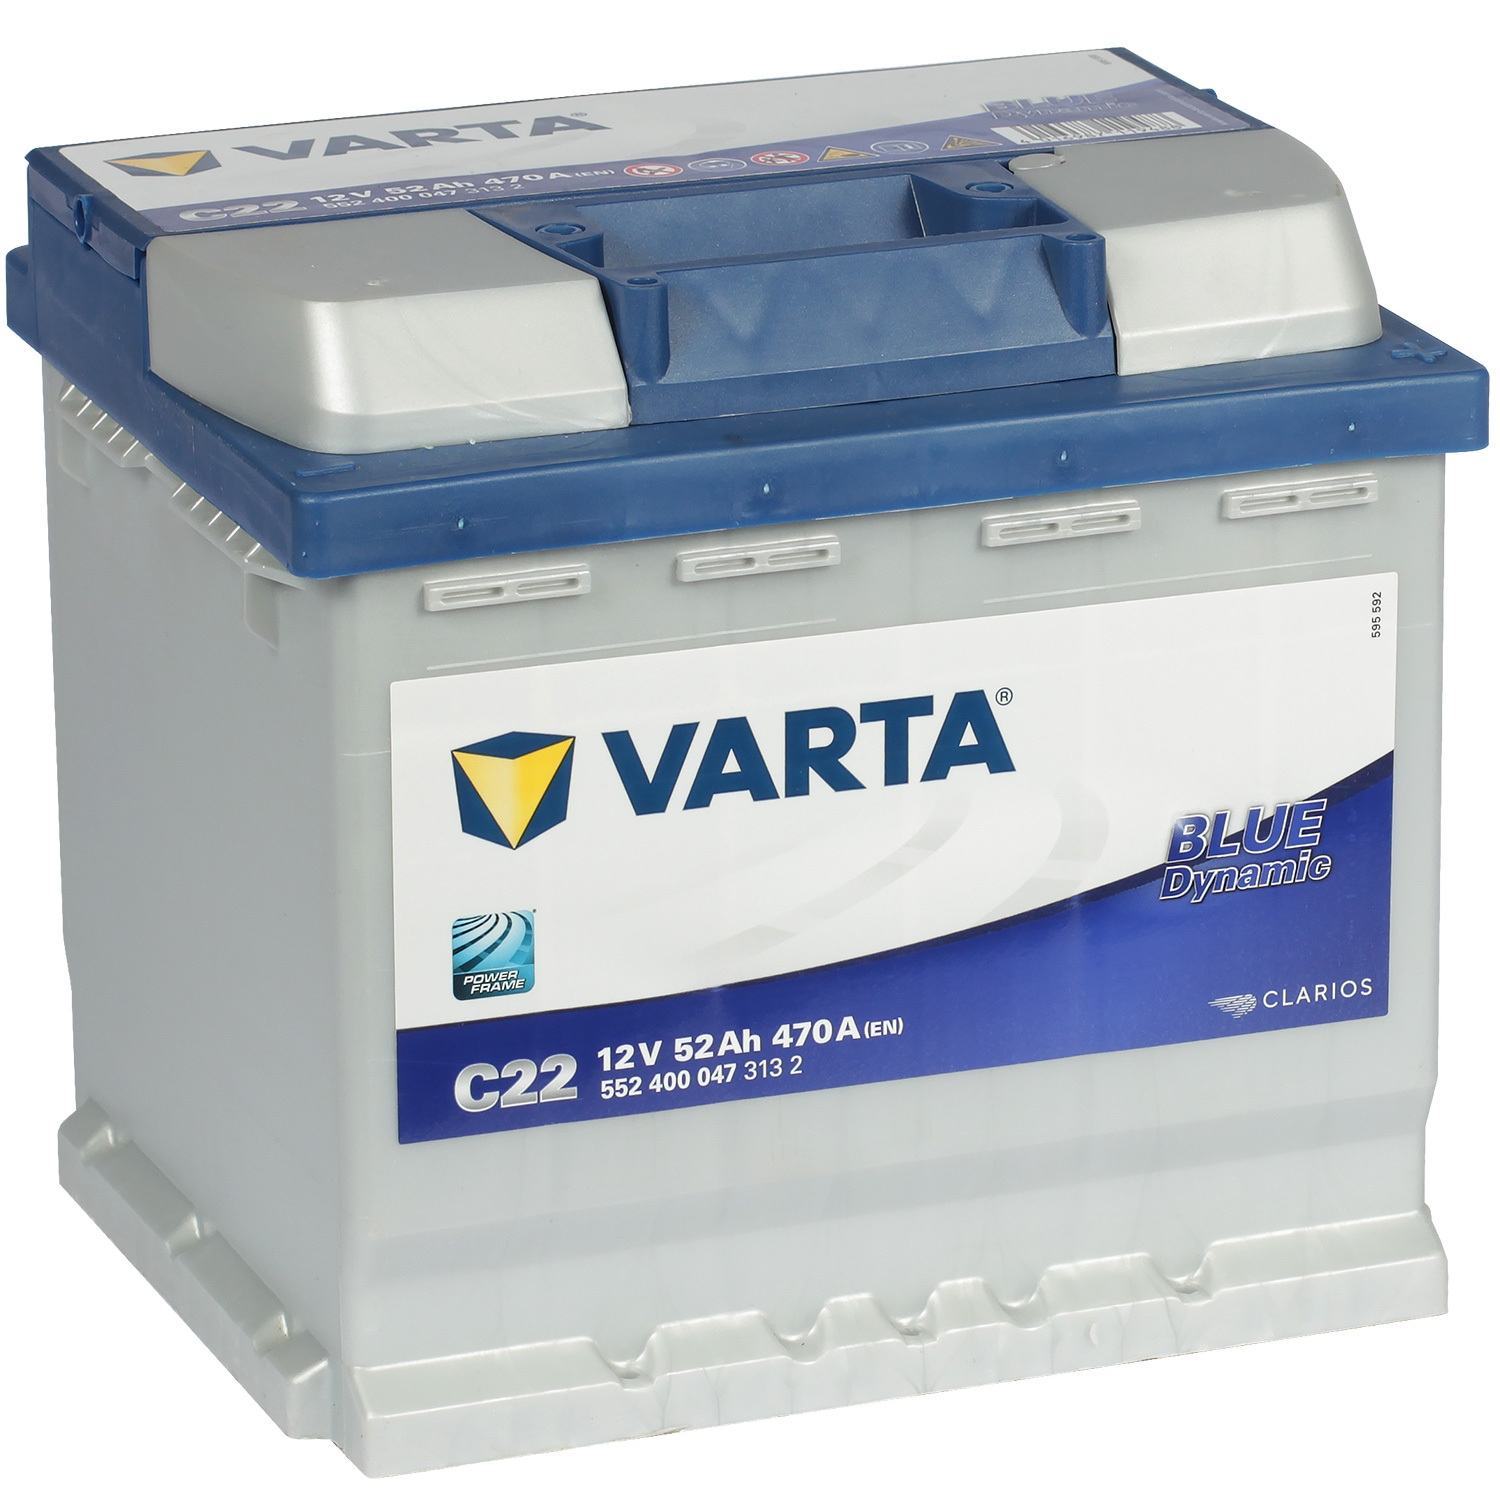 Varta Автомобильный аккумулятор Varta Blue Dynamic C22 52 Ач обратная полярность L1 varta автомобильный аккумулятор varta blue dynamic b32 45 ач обратная полярность b24l